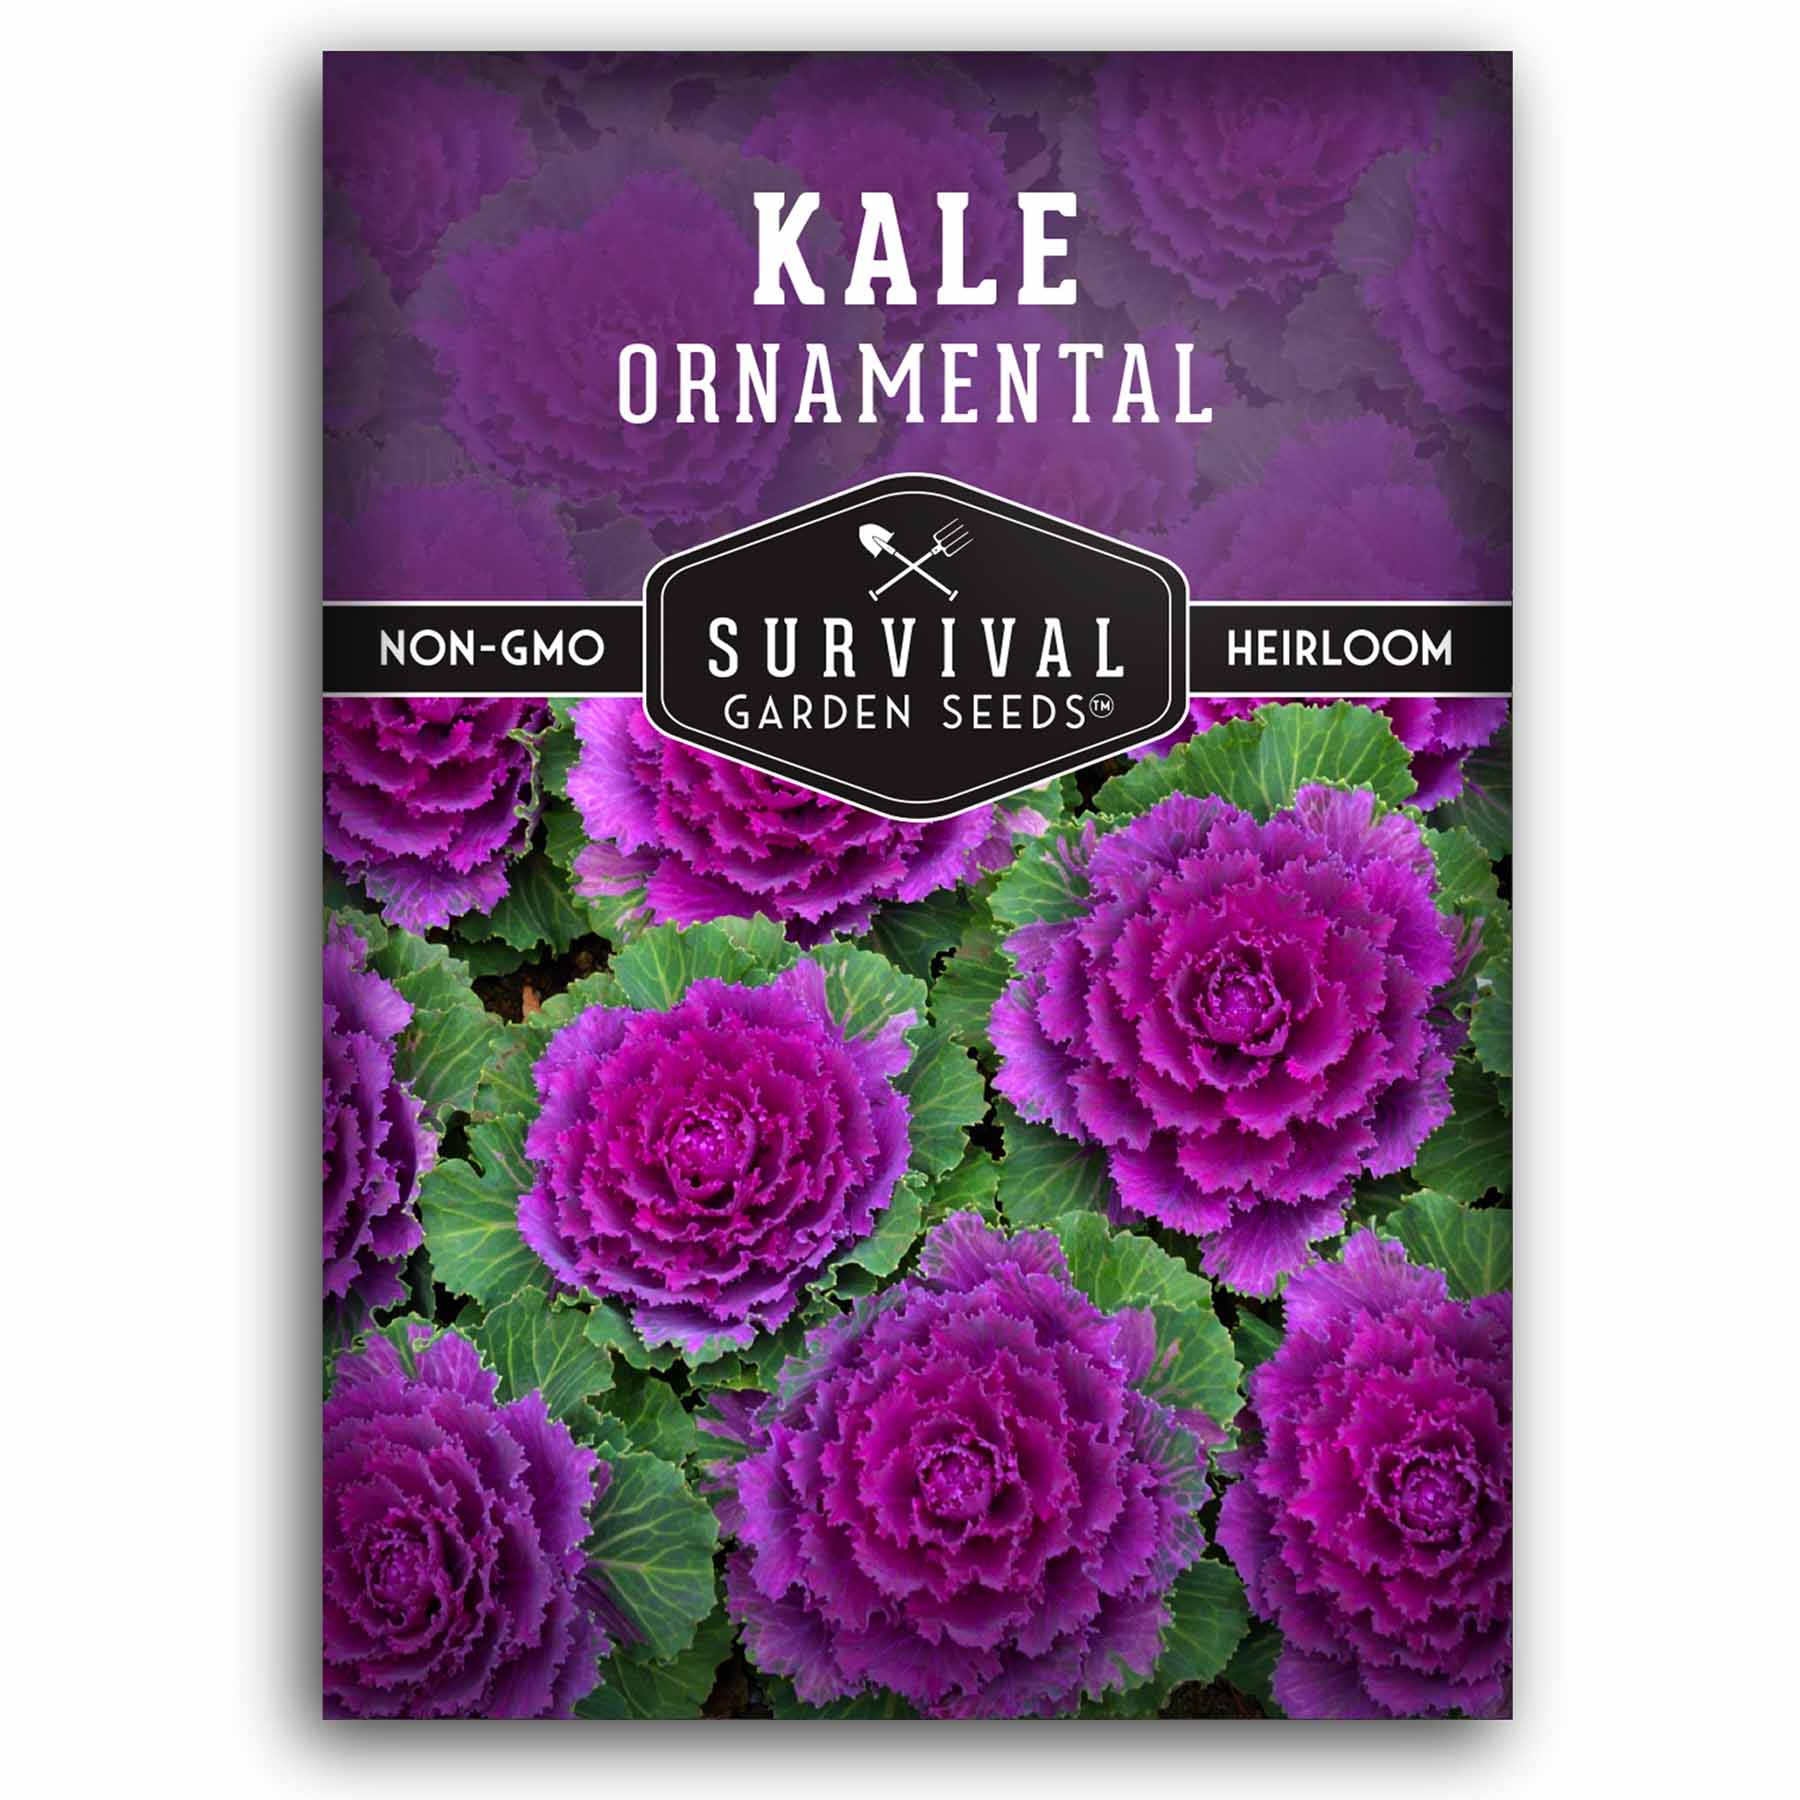 1 packet of Ornamental Kale seeds